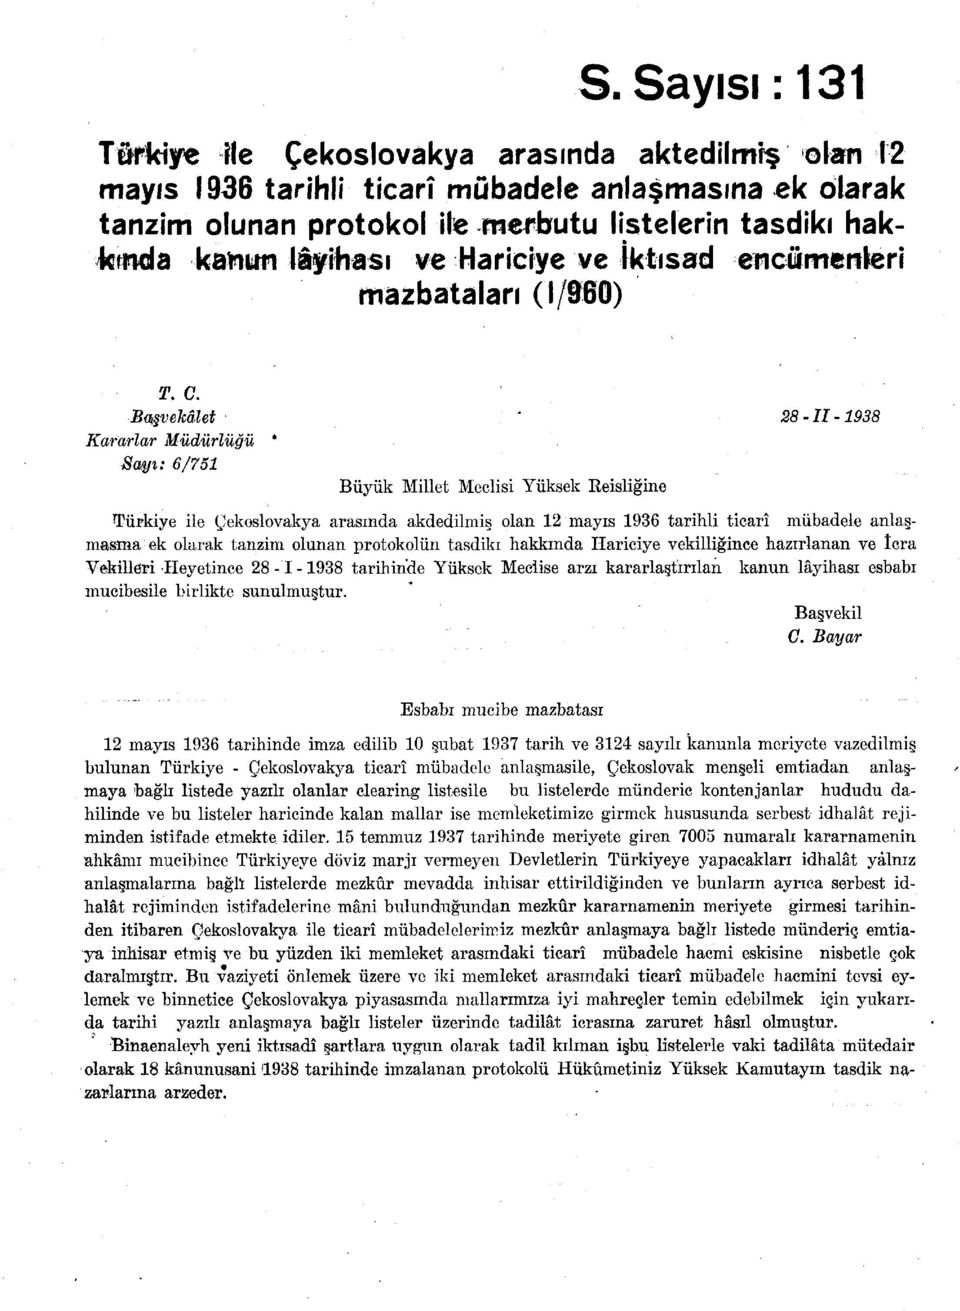 Başvekâlet ' 28-11-1938 Kararlar Müdürlüğü * Sayı: 6/751 Büyük Millet Meclisi Yüksek Reisliğine Türkiye ile Çekoslovakya arasında akdedilmiş olan 12 mayıs 1936 tarihli ticarî mübadele anlaşmasına ek